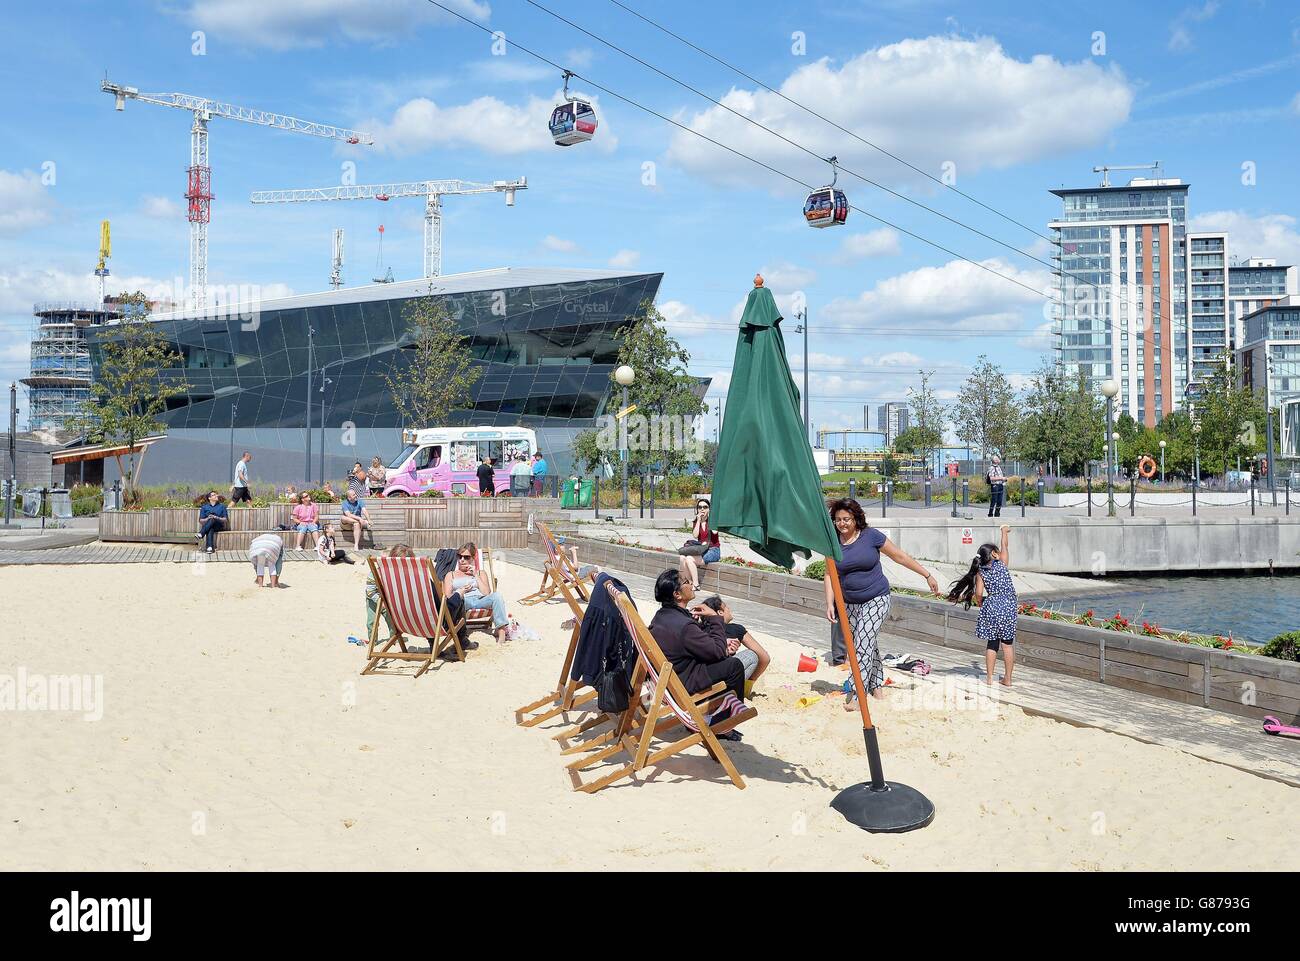 Familien entspannen sich auf den kostenlosen Liegestühlen und genießen die Sonne am künstlichen Strand am westlichen Ende der Royal Victoria Docks, in Newham, im Osten Londons, unterhalb der Emirates Air Line. Während des letzten heißen Wetters wurde eine Warteschlange von 1,000 Personen aufgezeichnet. Stockfoto